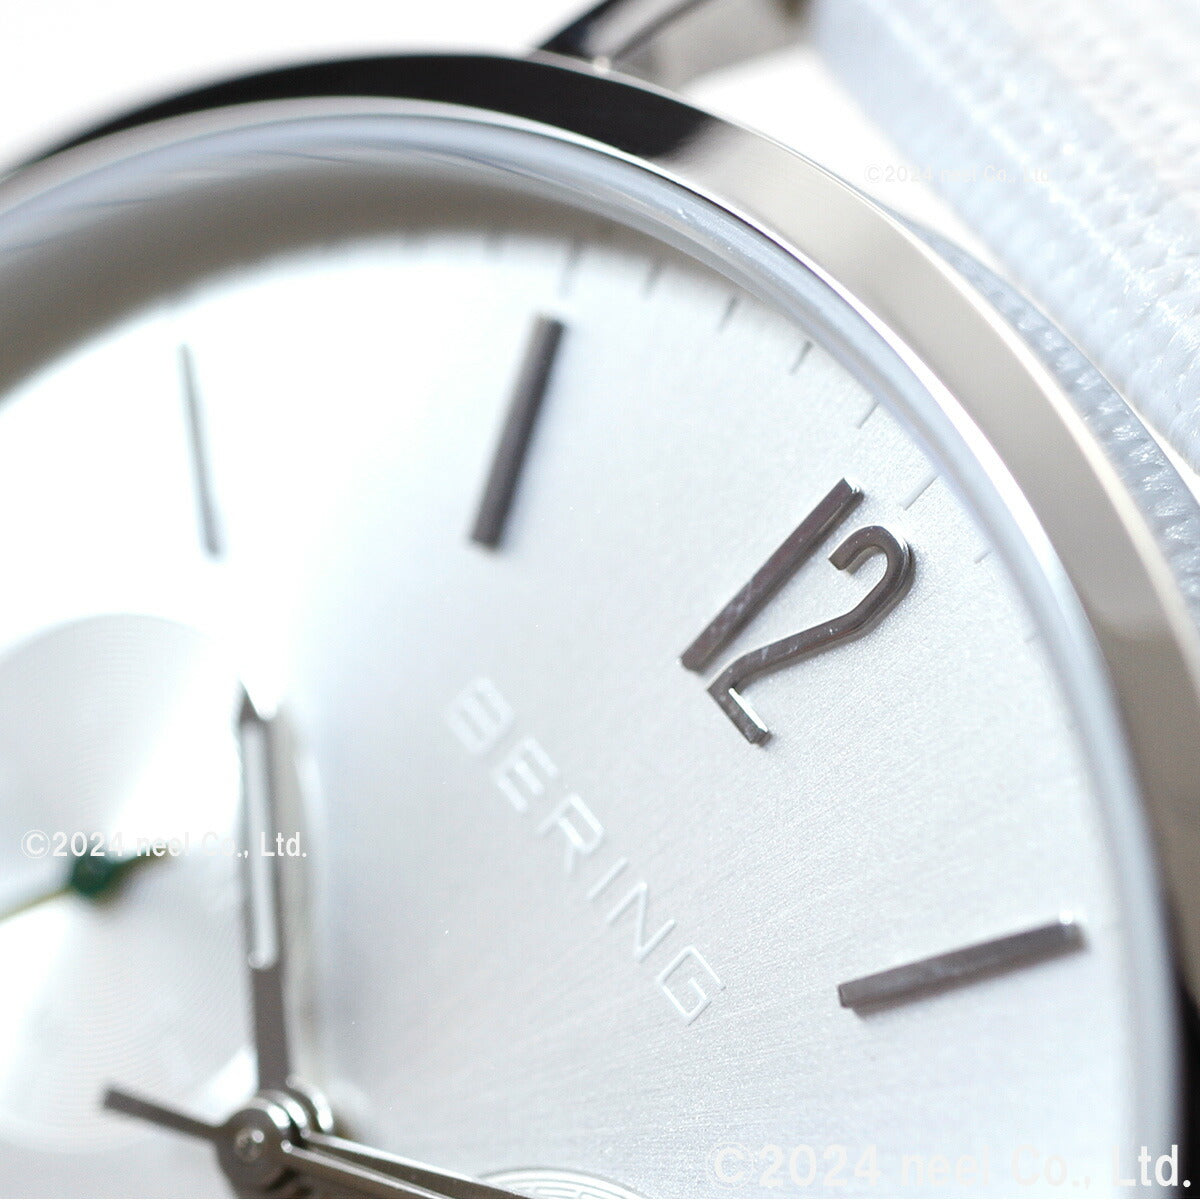 ベーリング BERING 日本限定モデル FORST 腕時計 メンズ レディース OCEAN ＆ FOREST 14236-000-J